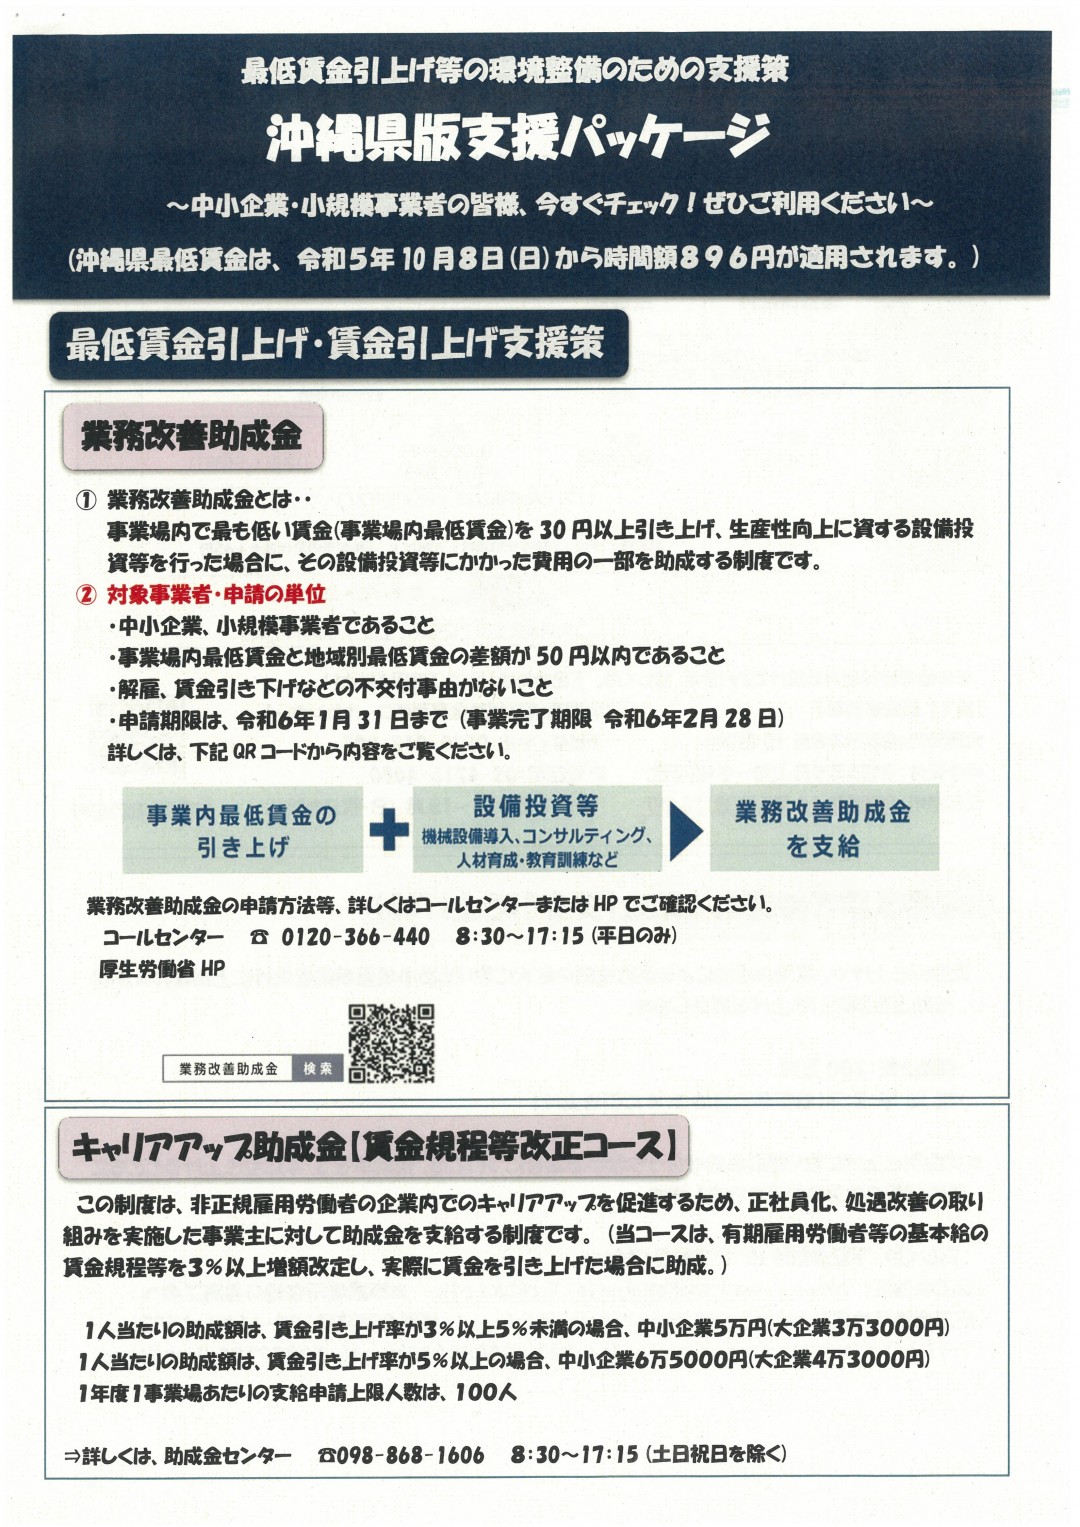 沖縄県版支援策パッケージ1